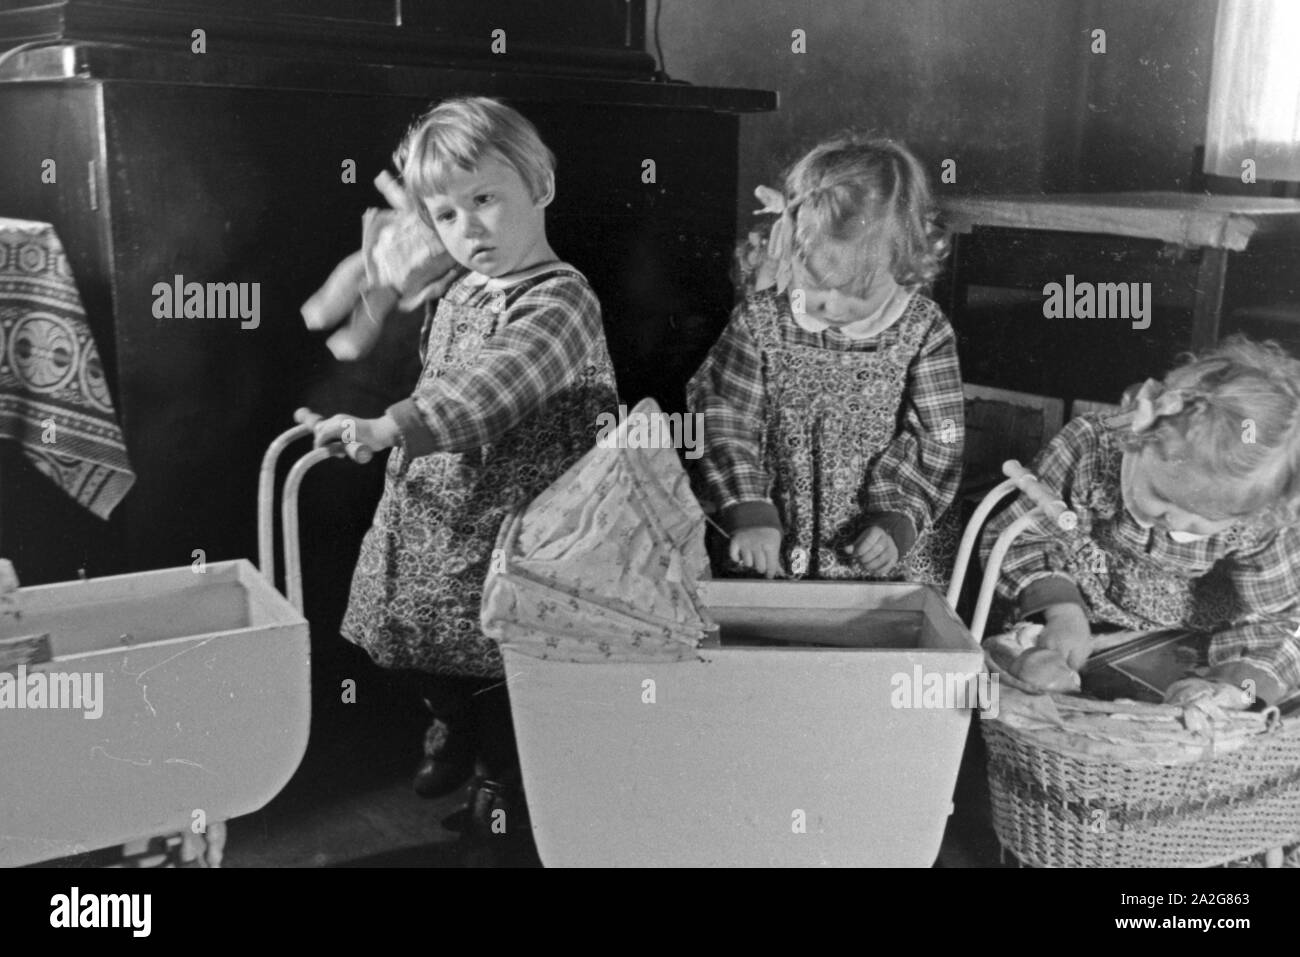 Drei der Knipser Vierlinge als Kleinkinder mit ihren Puppenwagen, Deutschland 1930er Jahre. Three of Knipser's quadruplet girls with their doll's prams, Germany 1930s. Stock Photo